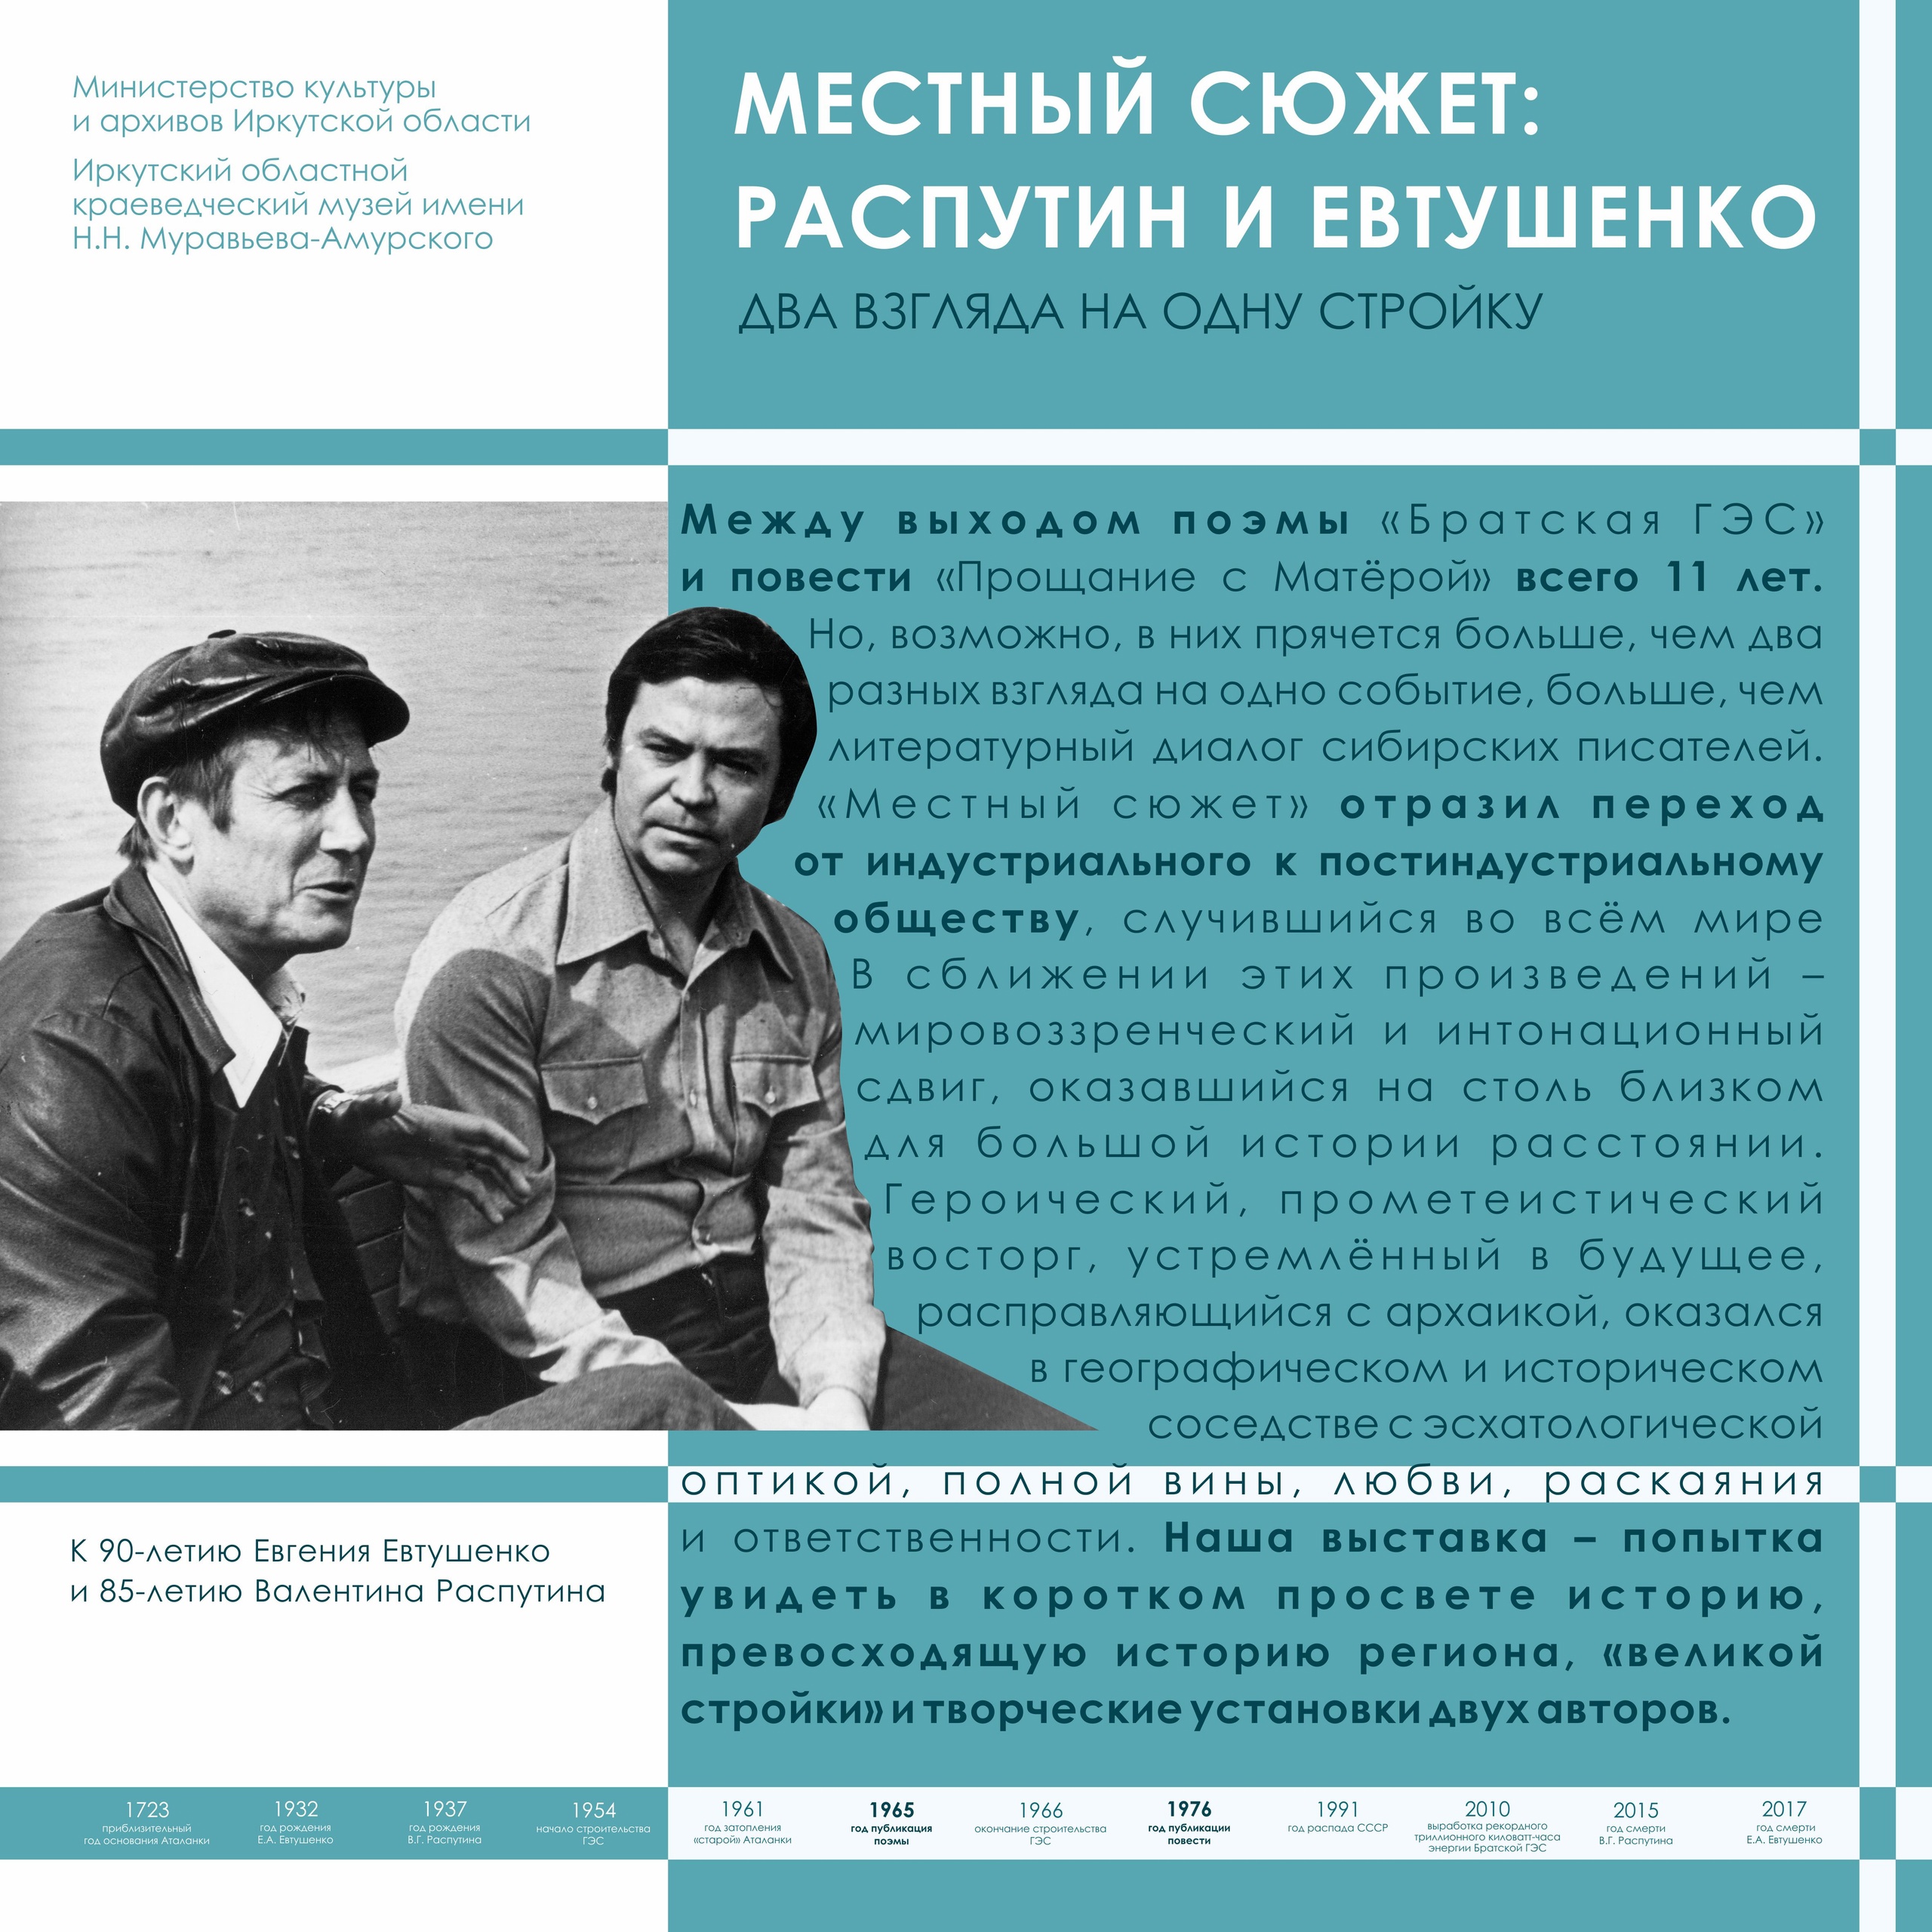 Иркутский краеведческий музей подготовил электронную выставку о Распутине и Евтушенко